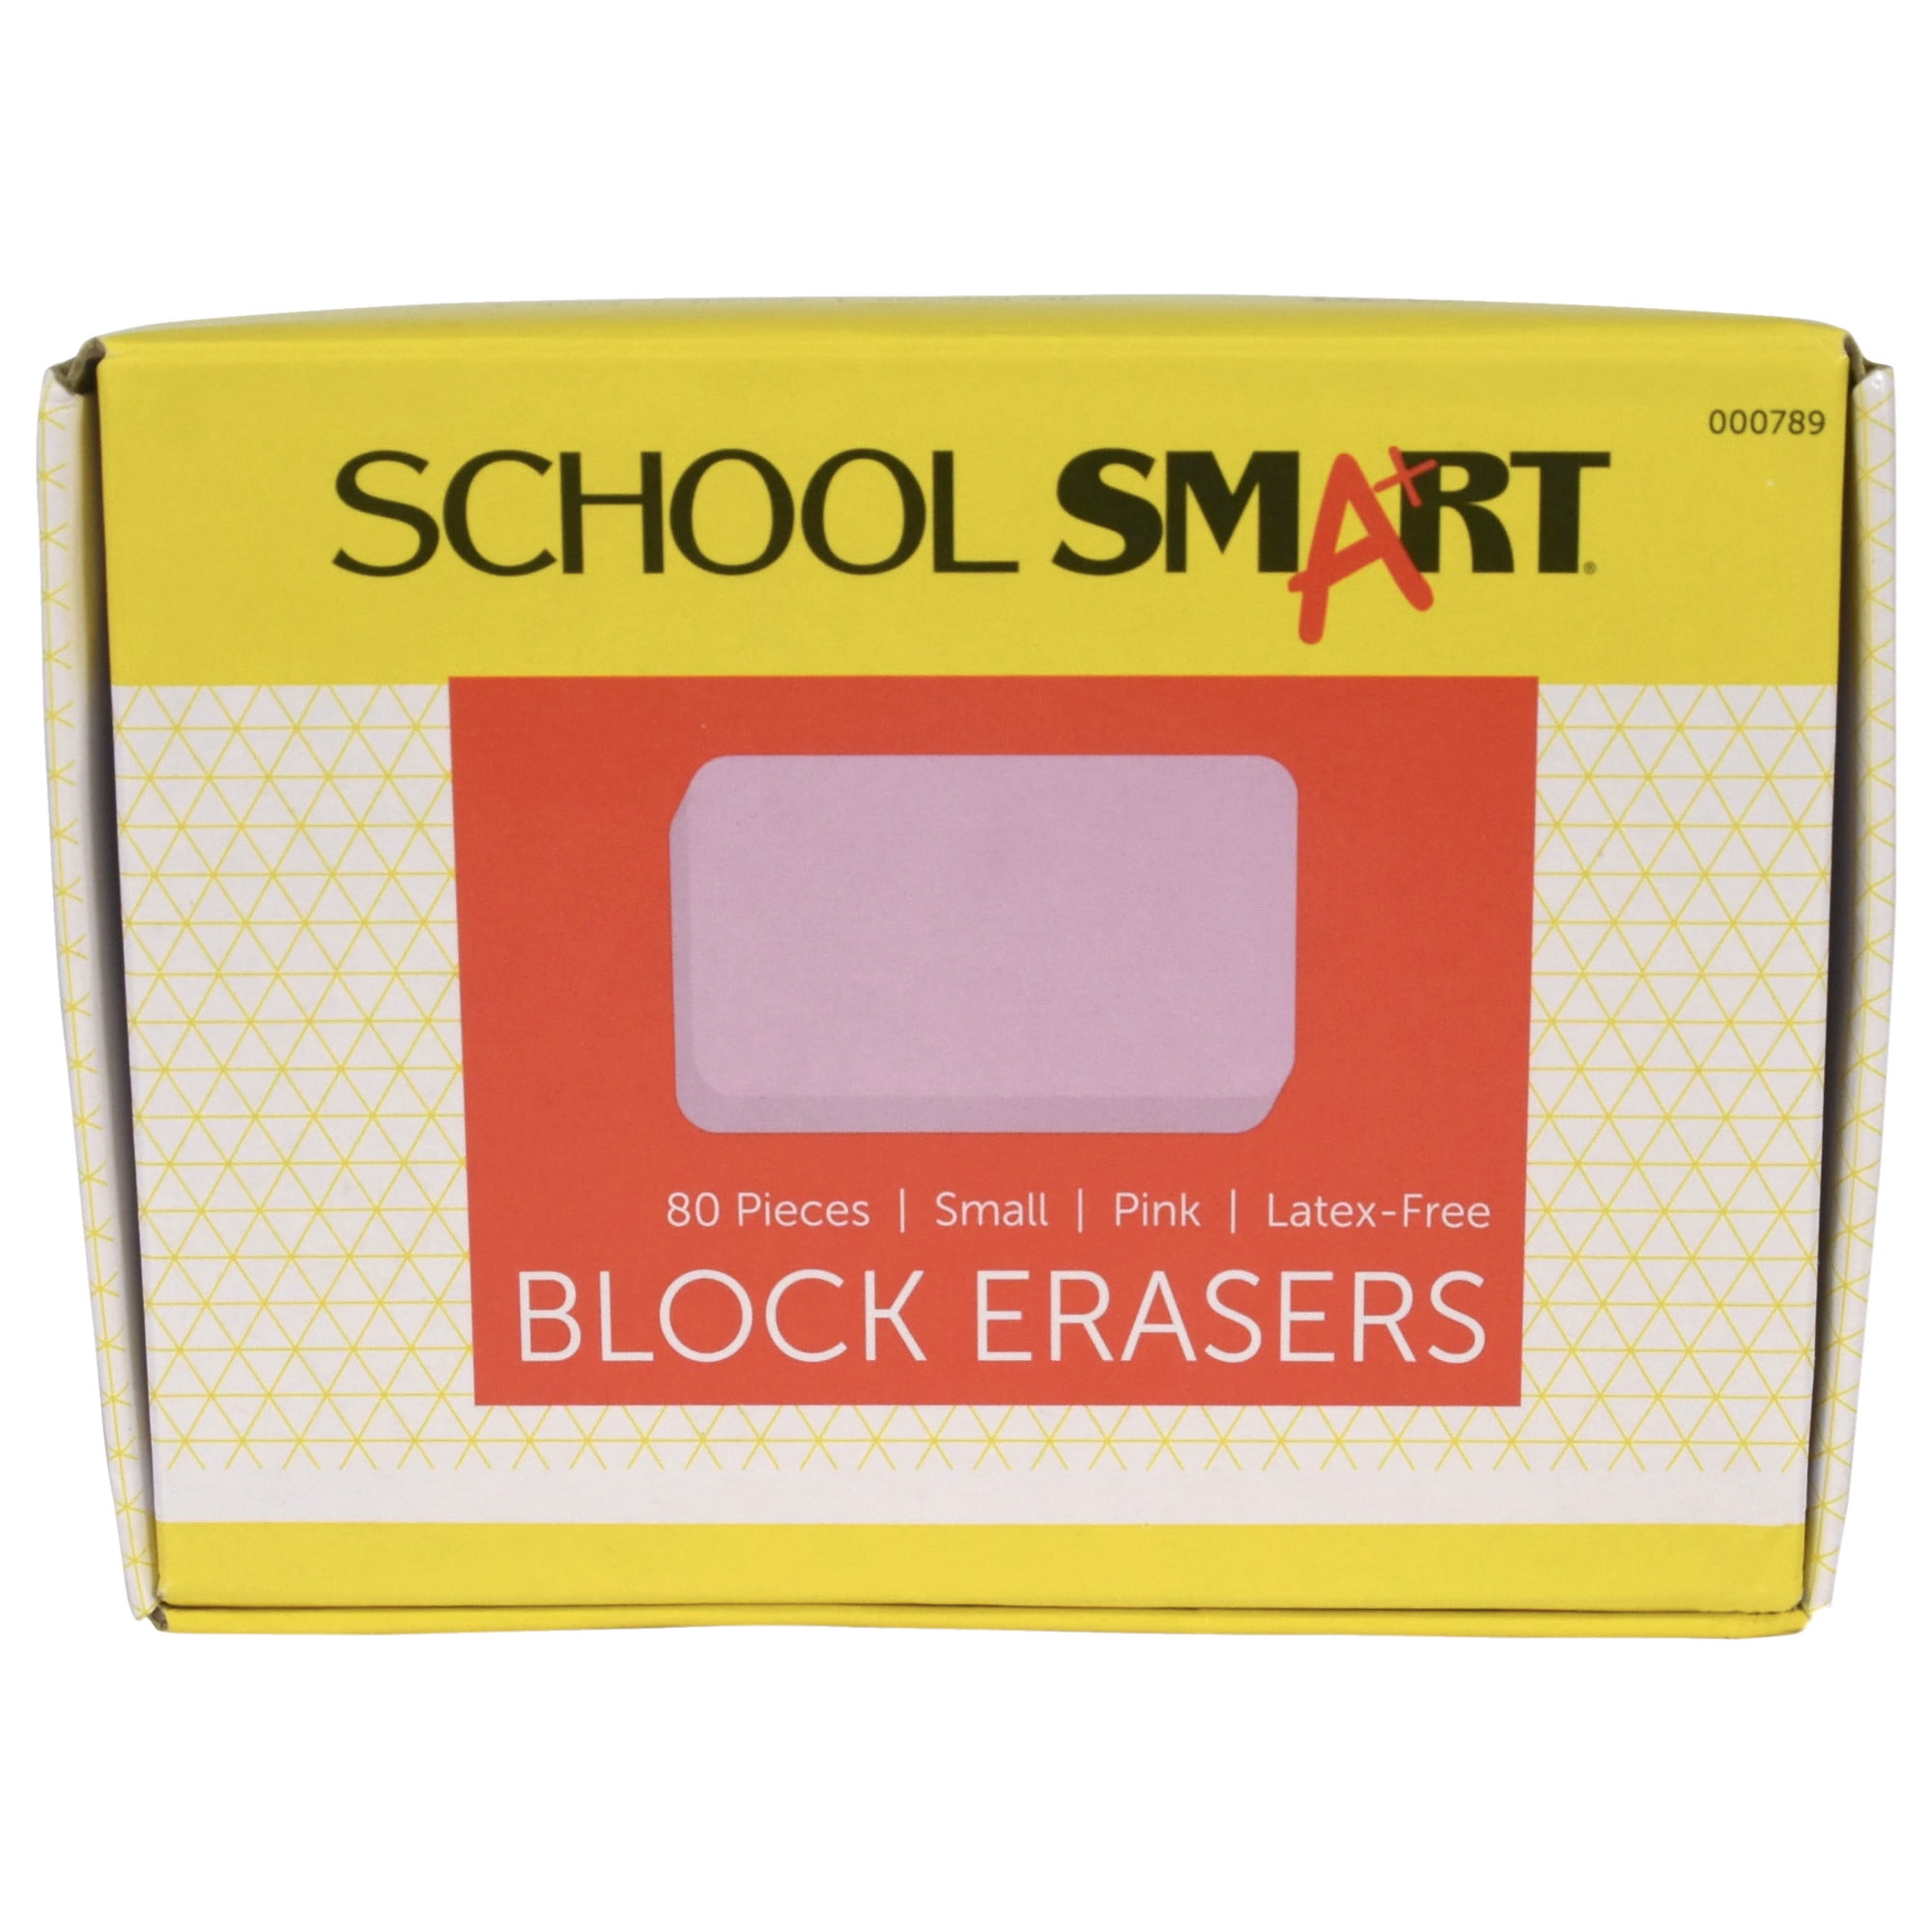 Toysmith Really Big Eraser